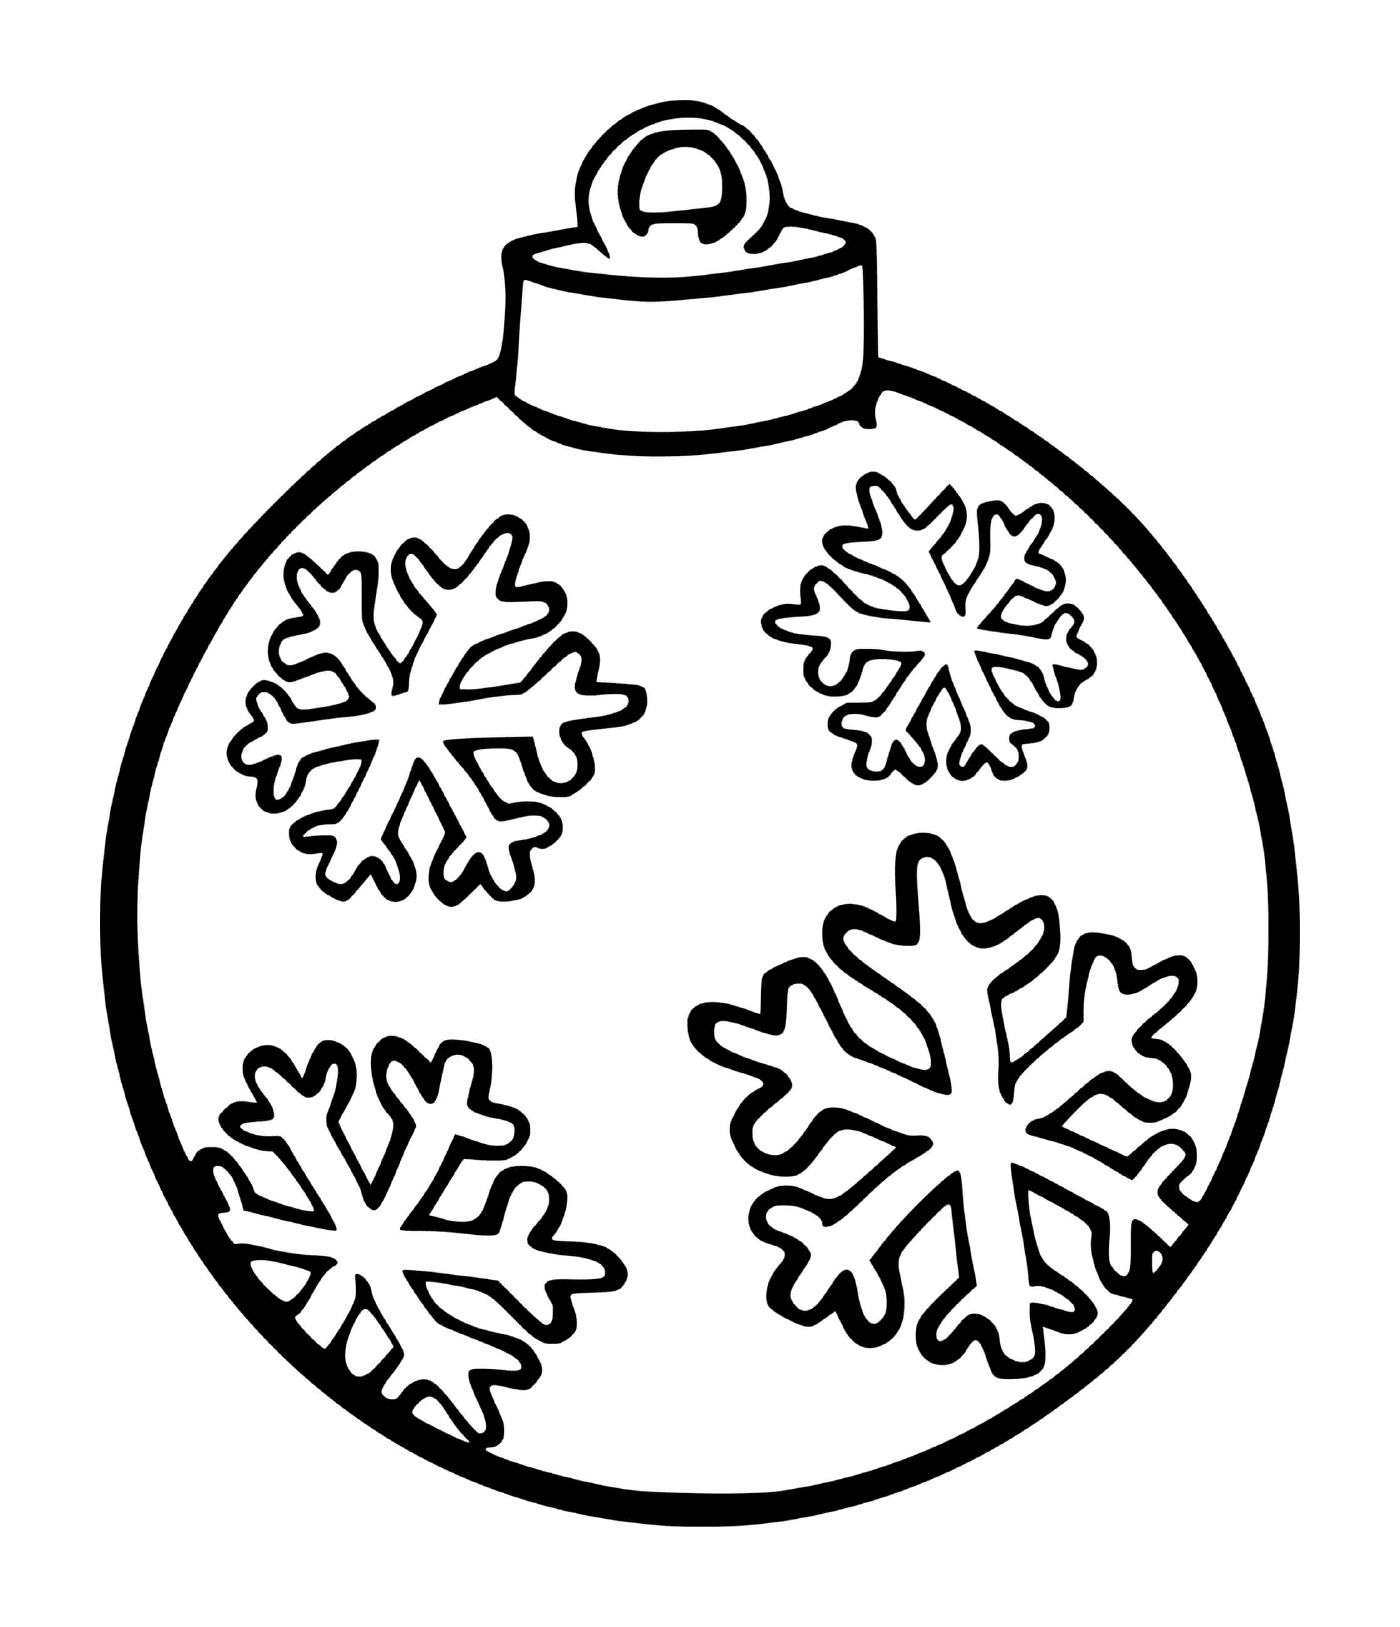  Снежинка в мячике на рождественской елке 